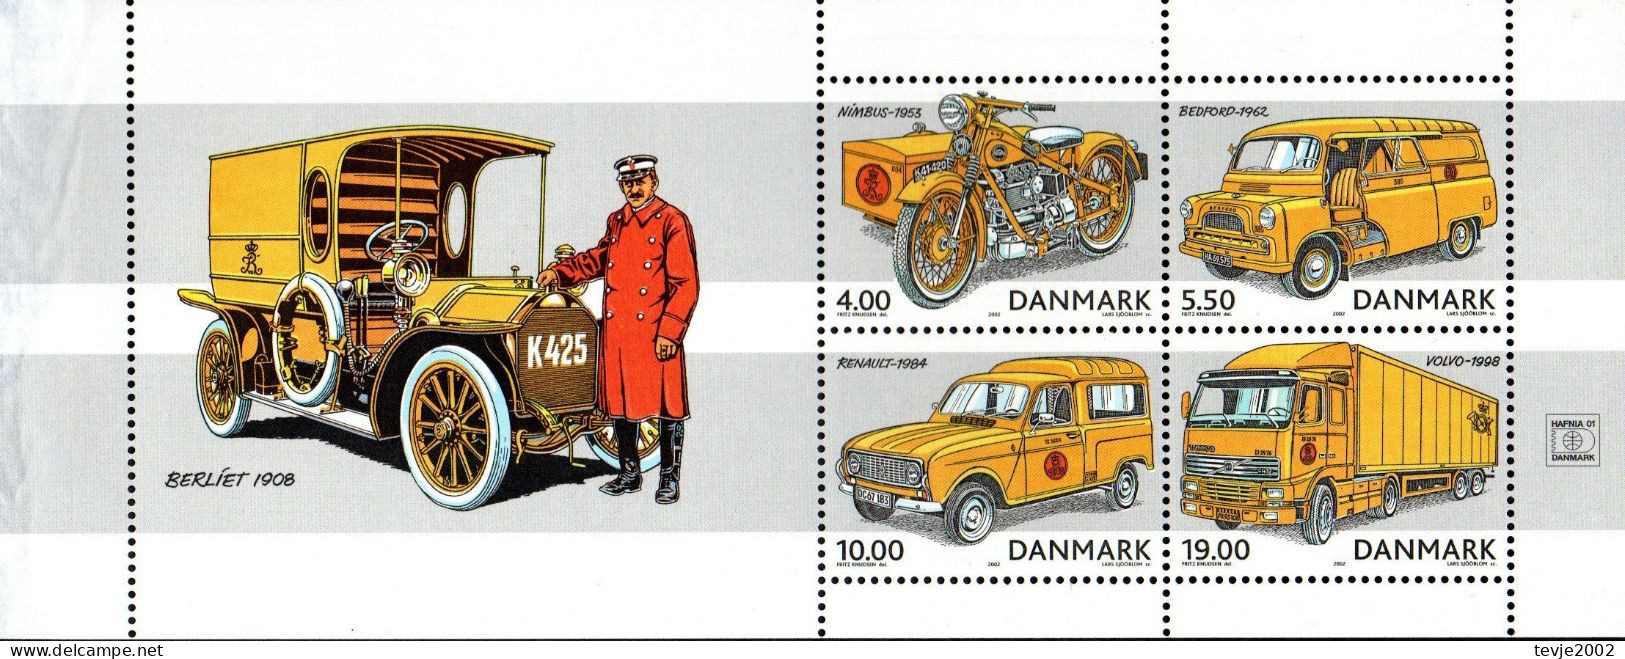 Dänemark 2002 - Mi.Nr. 1312 - 1315 (aus Markenheftchen) - Postfrisch MNH - Post - Unused Stamps